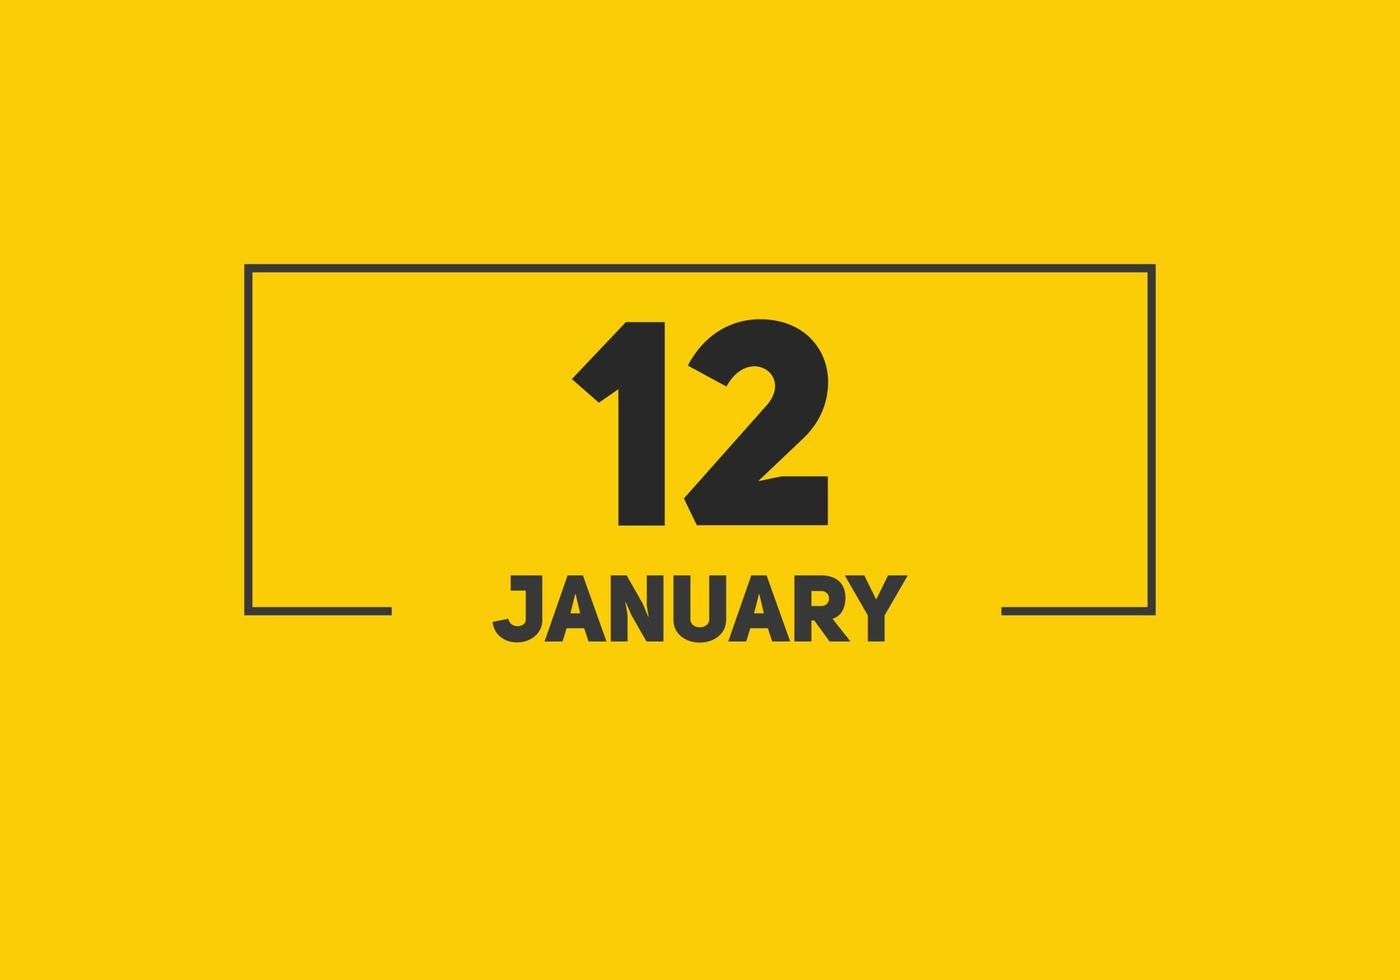 lembrete de calendário de 12 de janeiro. Modelo de ícone de calendário diário de 12 de janeiro. modelo de design de ícone de 12 de janeiro de calendário. ilustração vetorial vetor